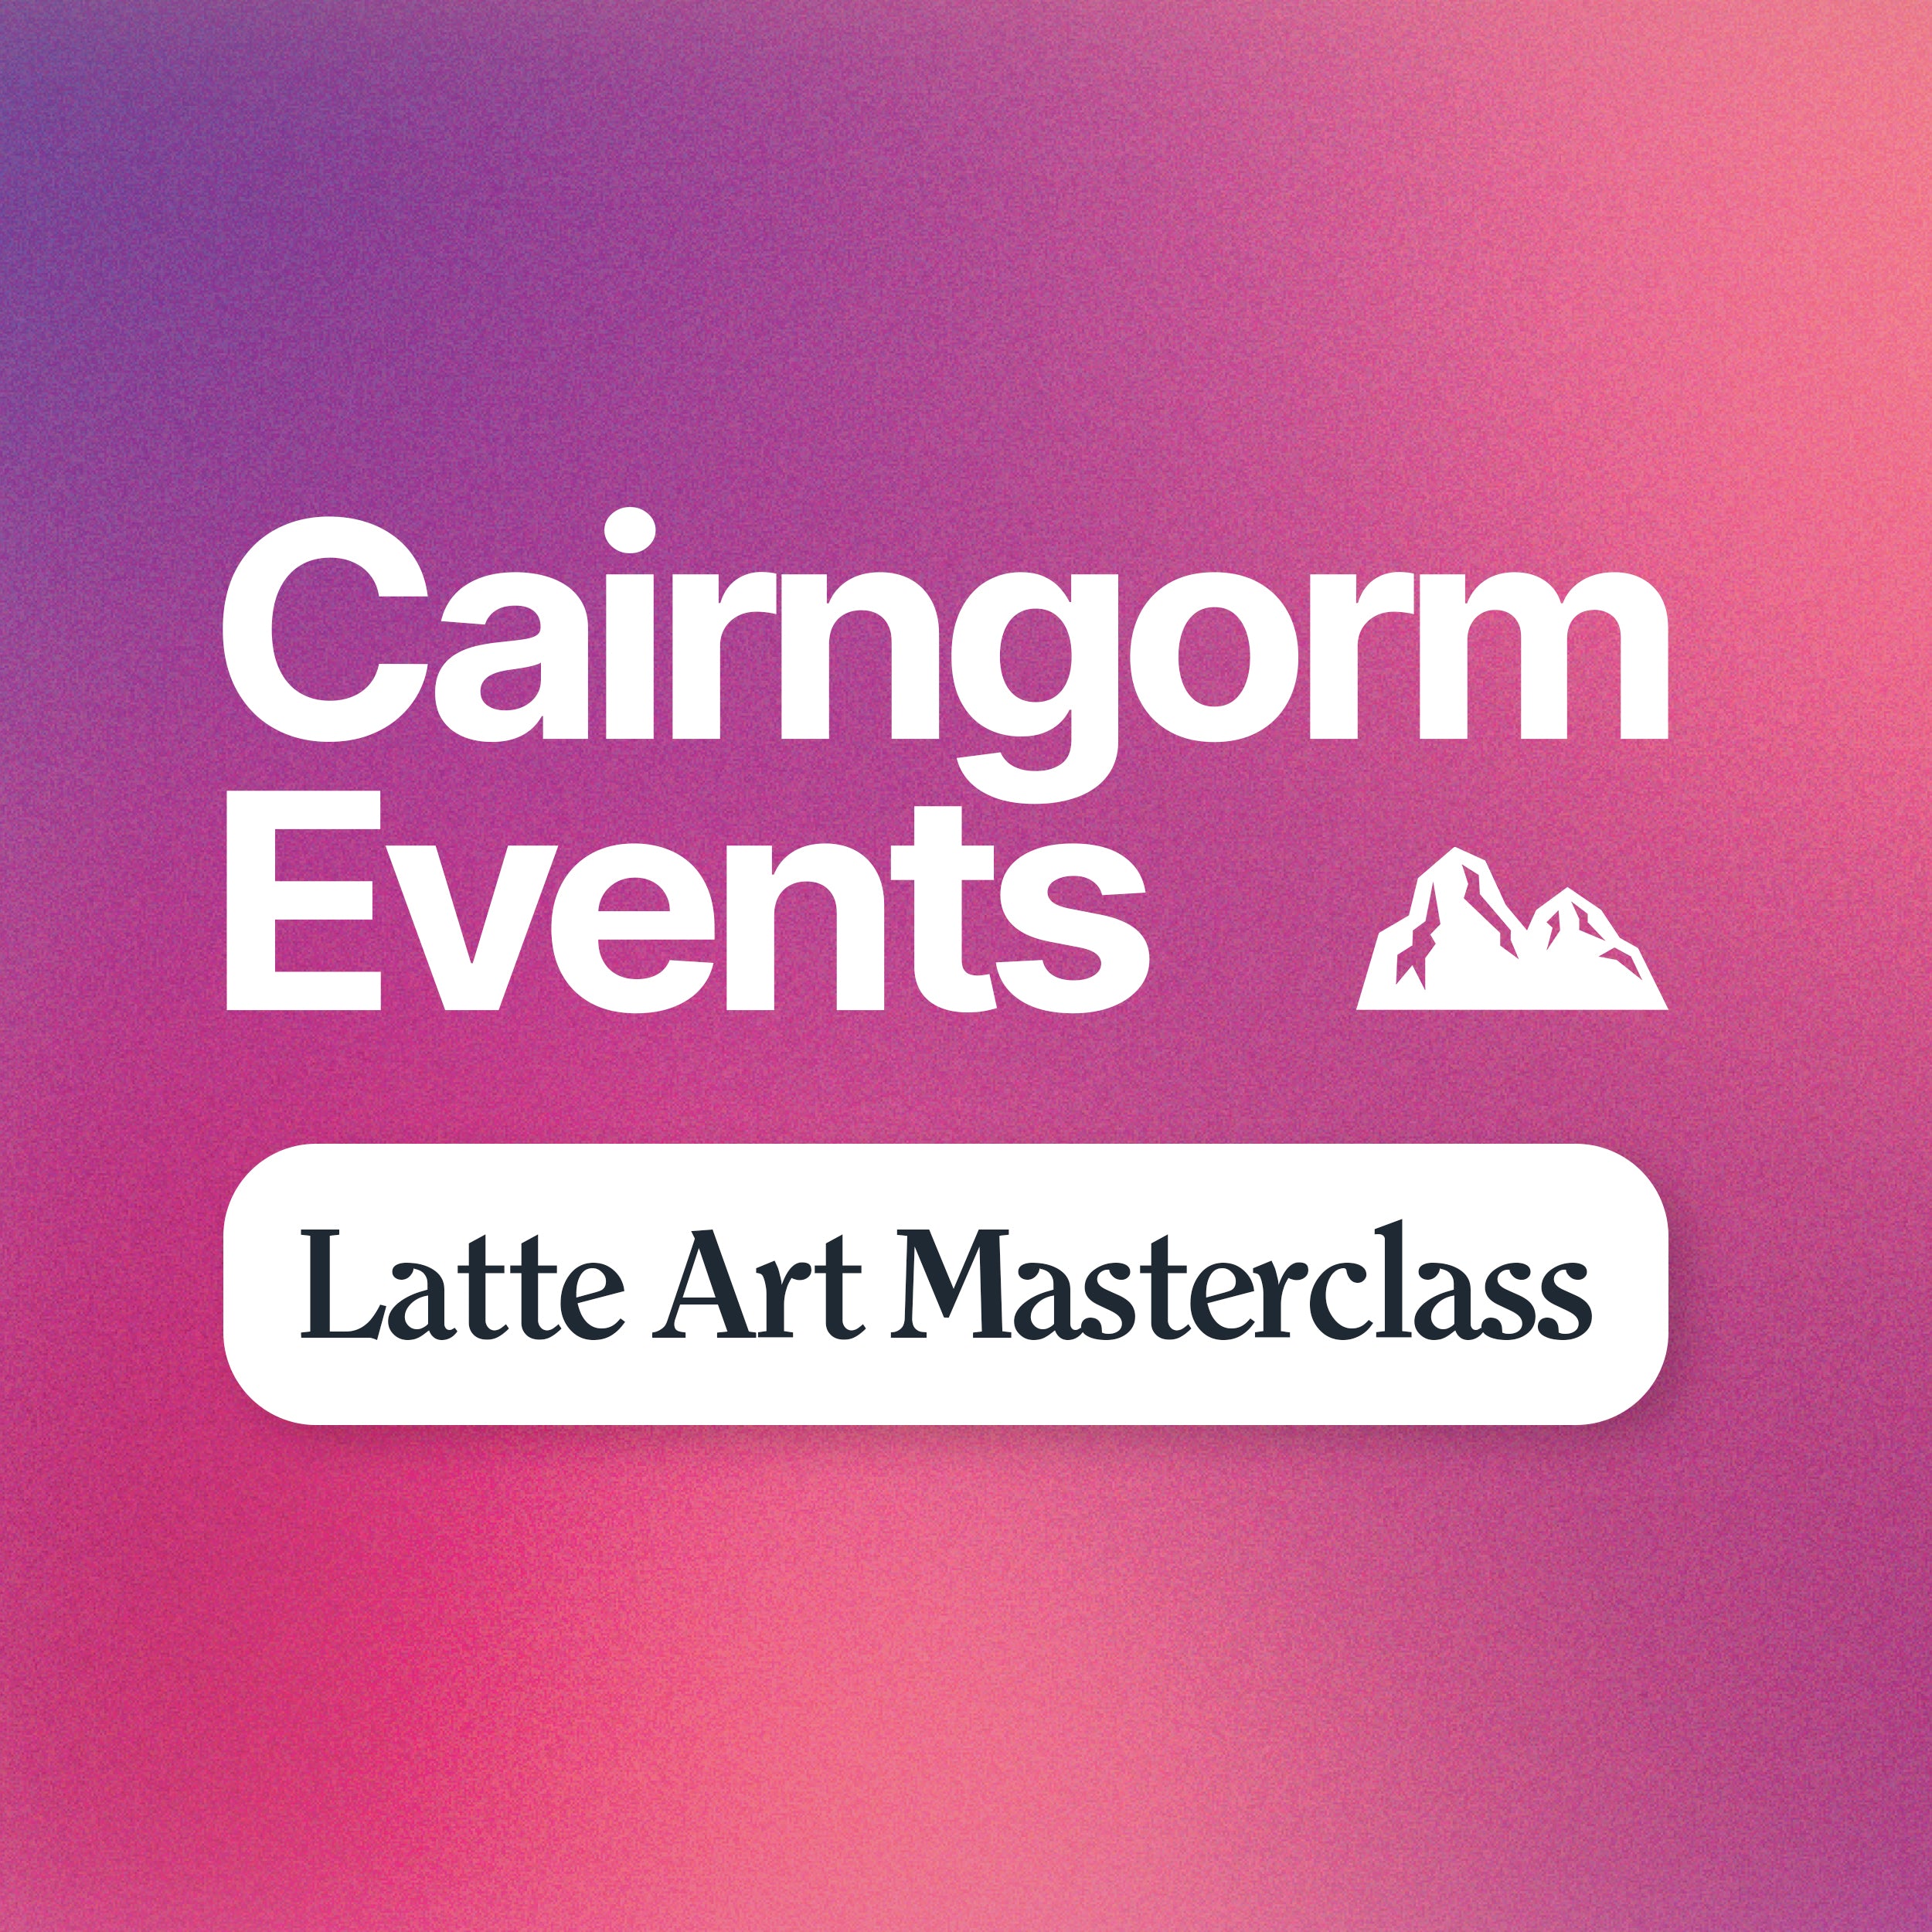 Cairngorm Events - Latte Art Masterclass